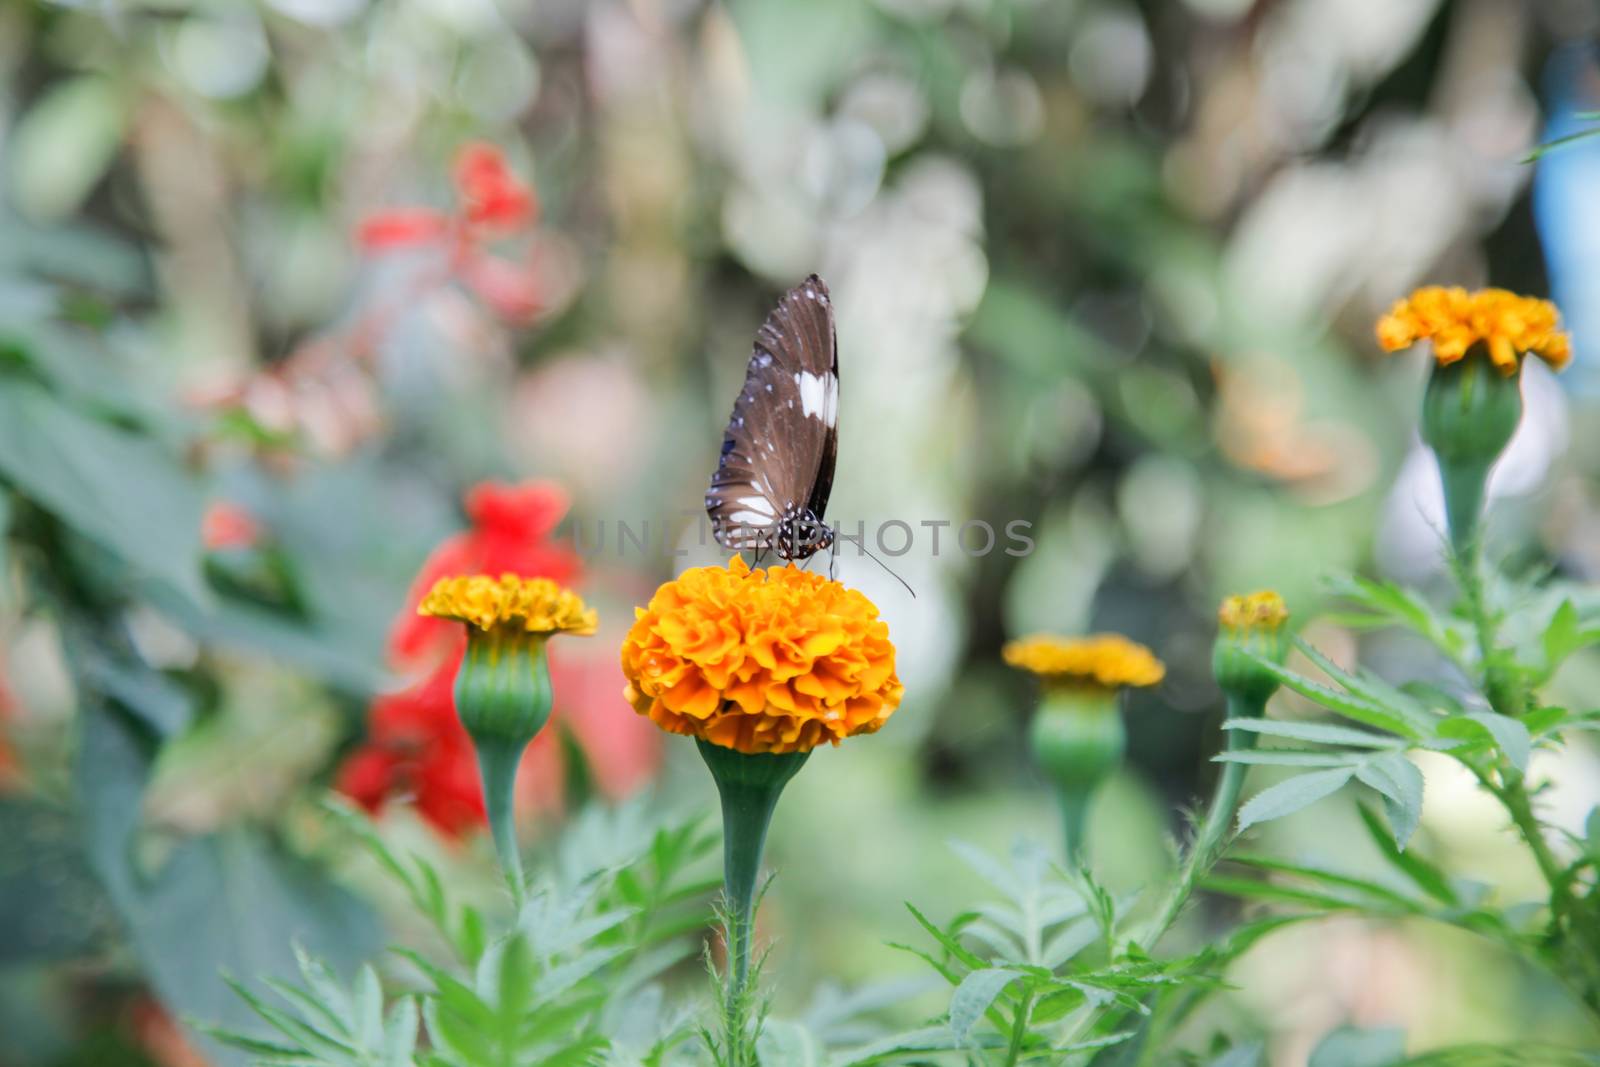 Butterfly on Orange Flower by haiderazim